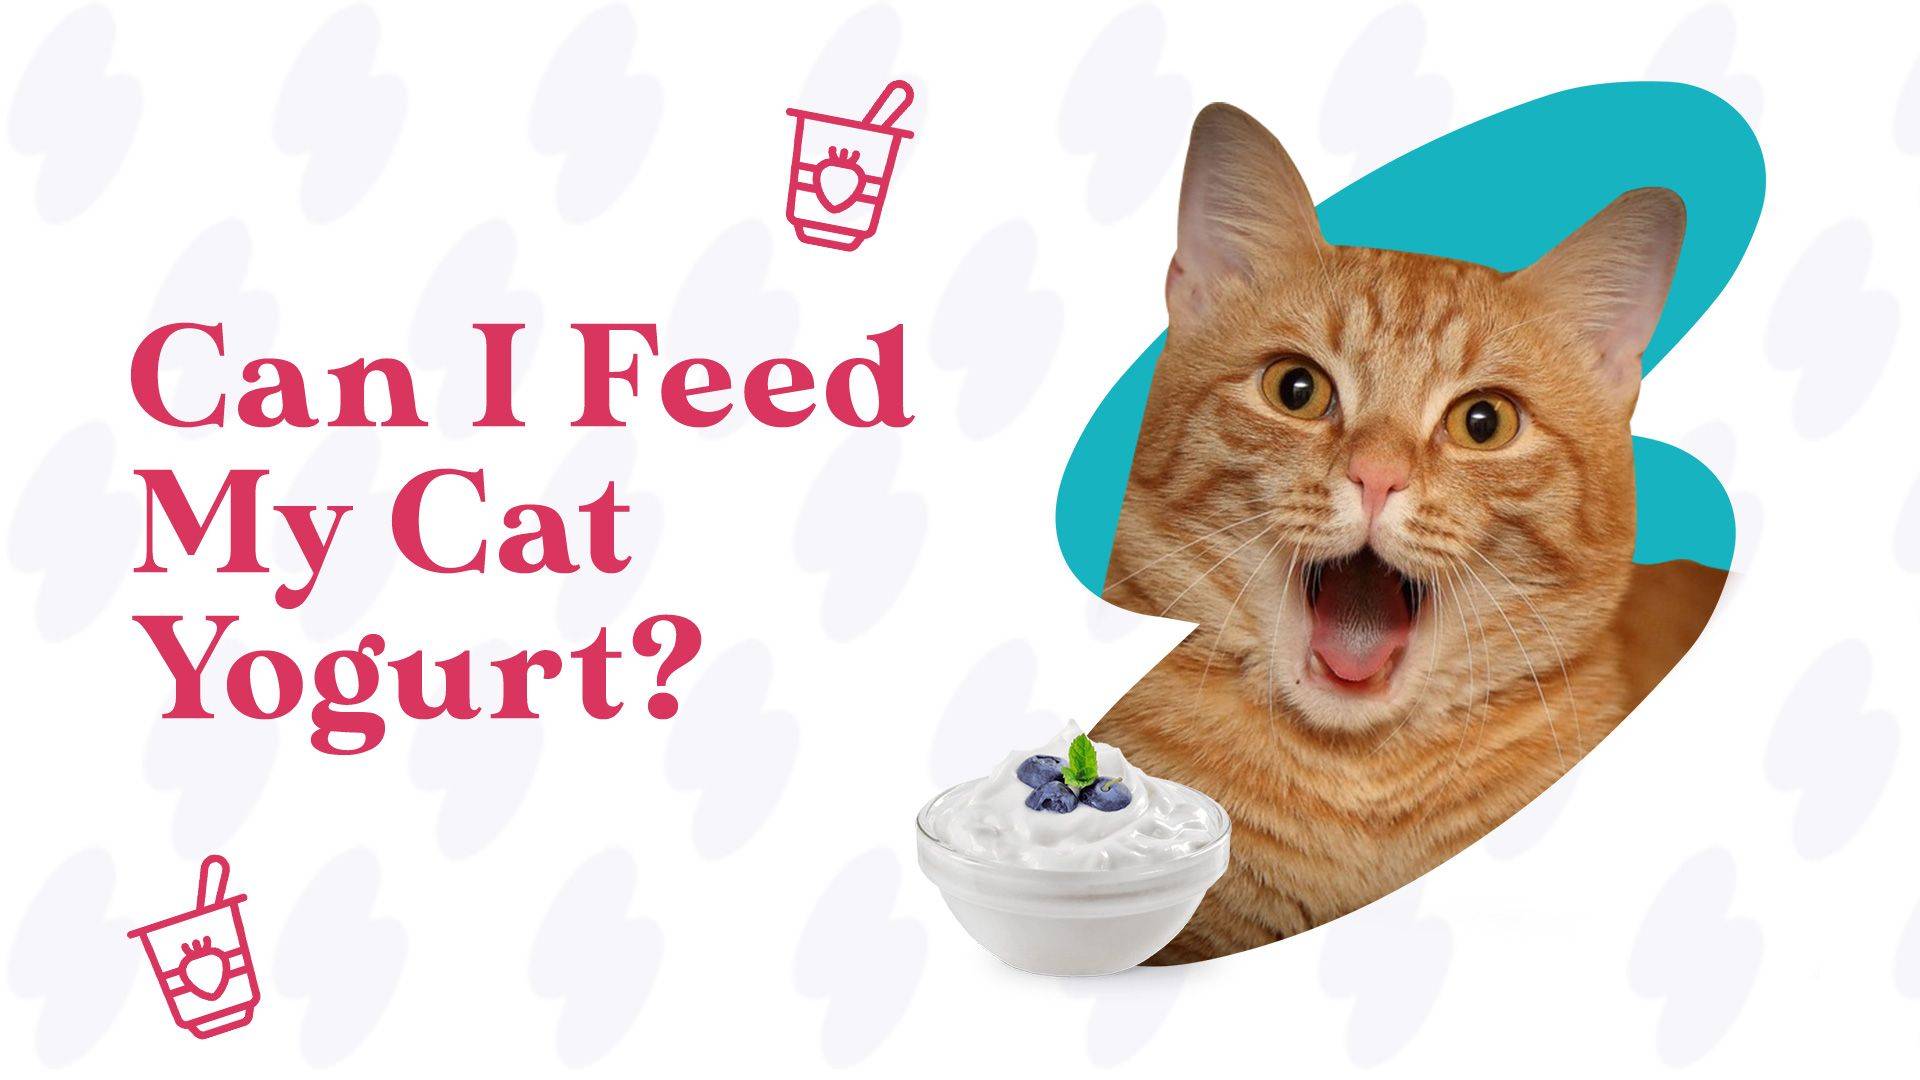 can cats eat yogurt